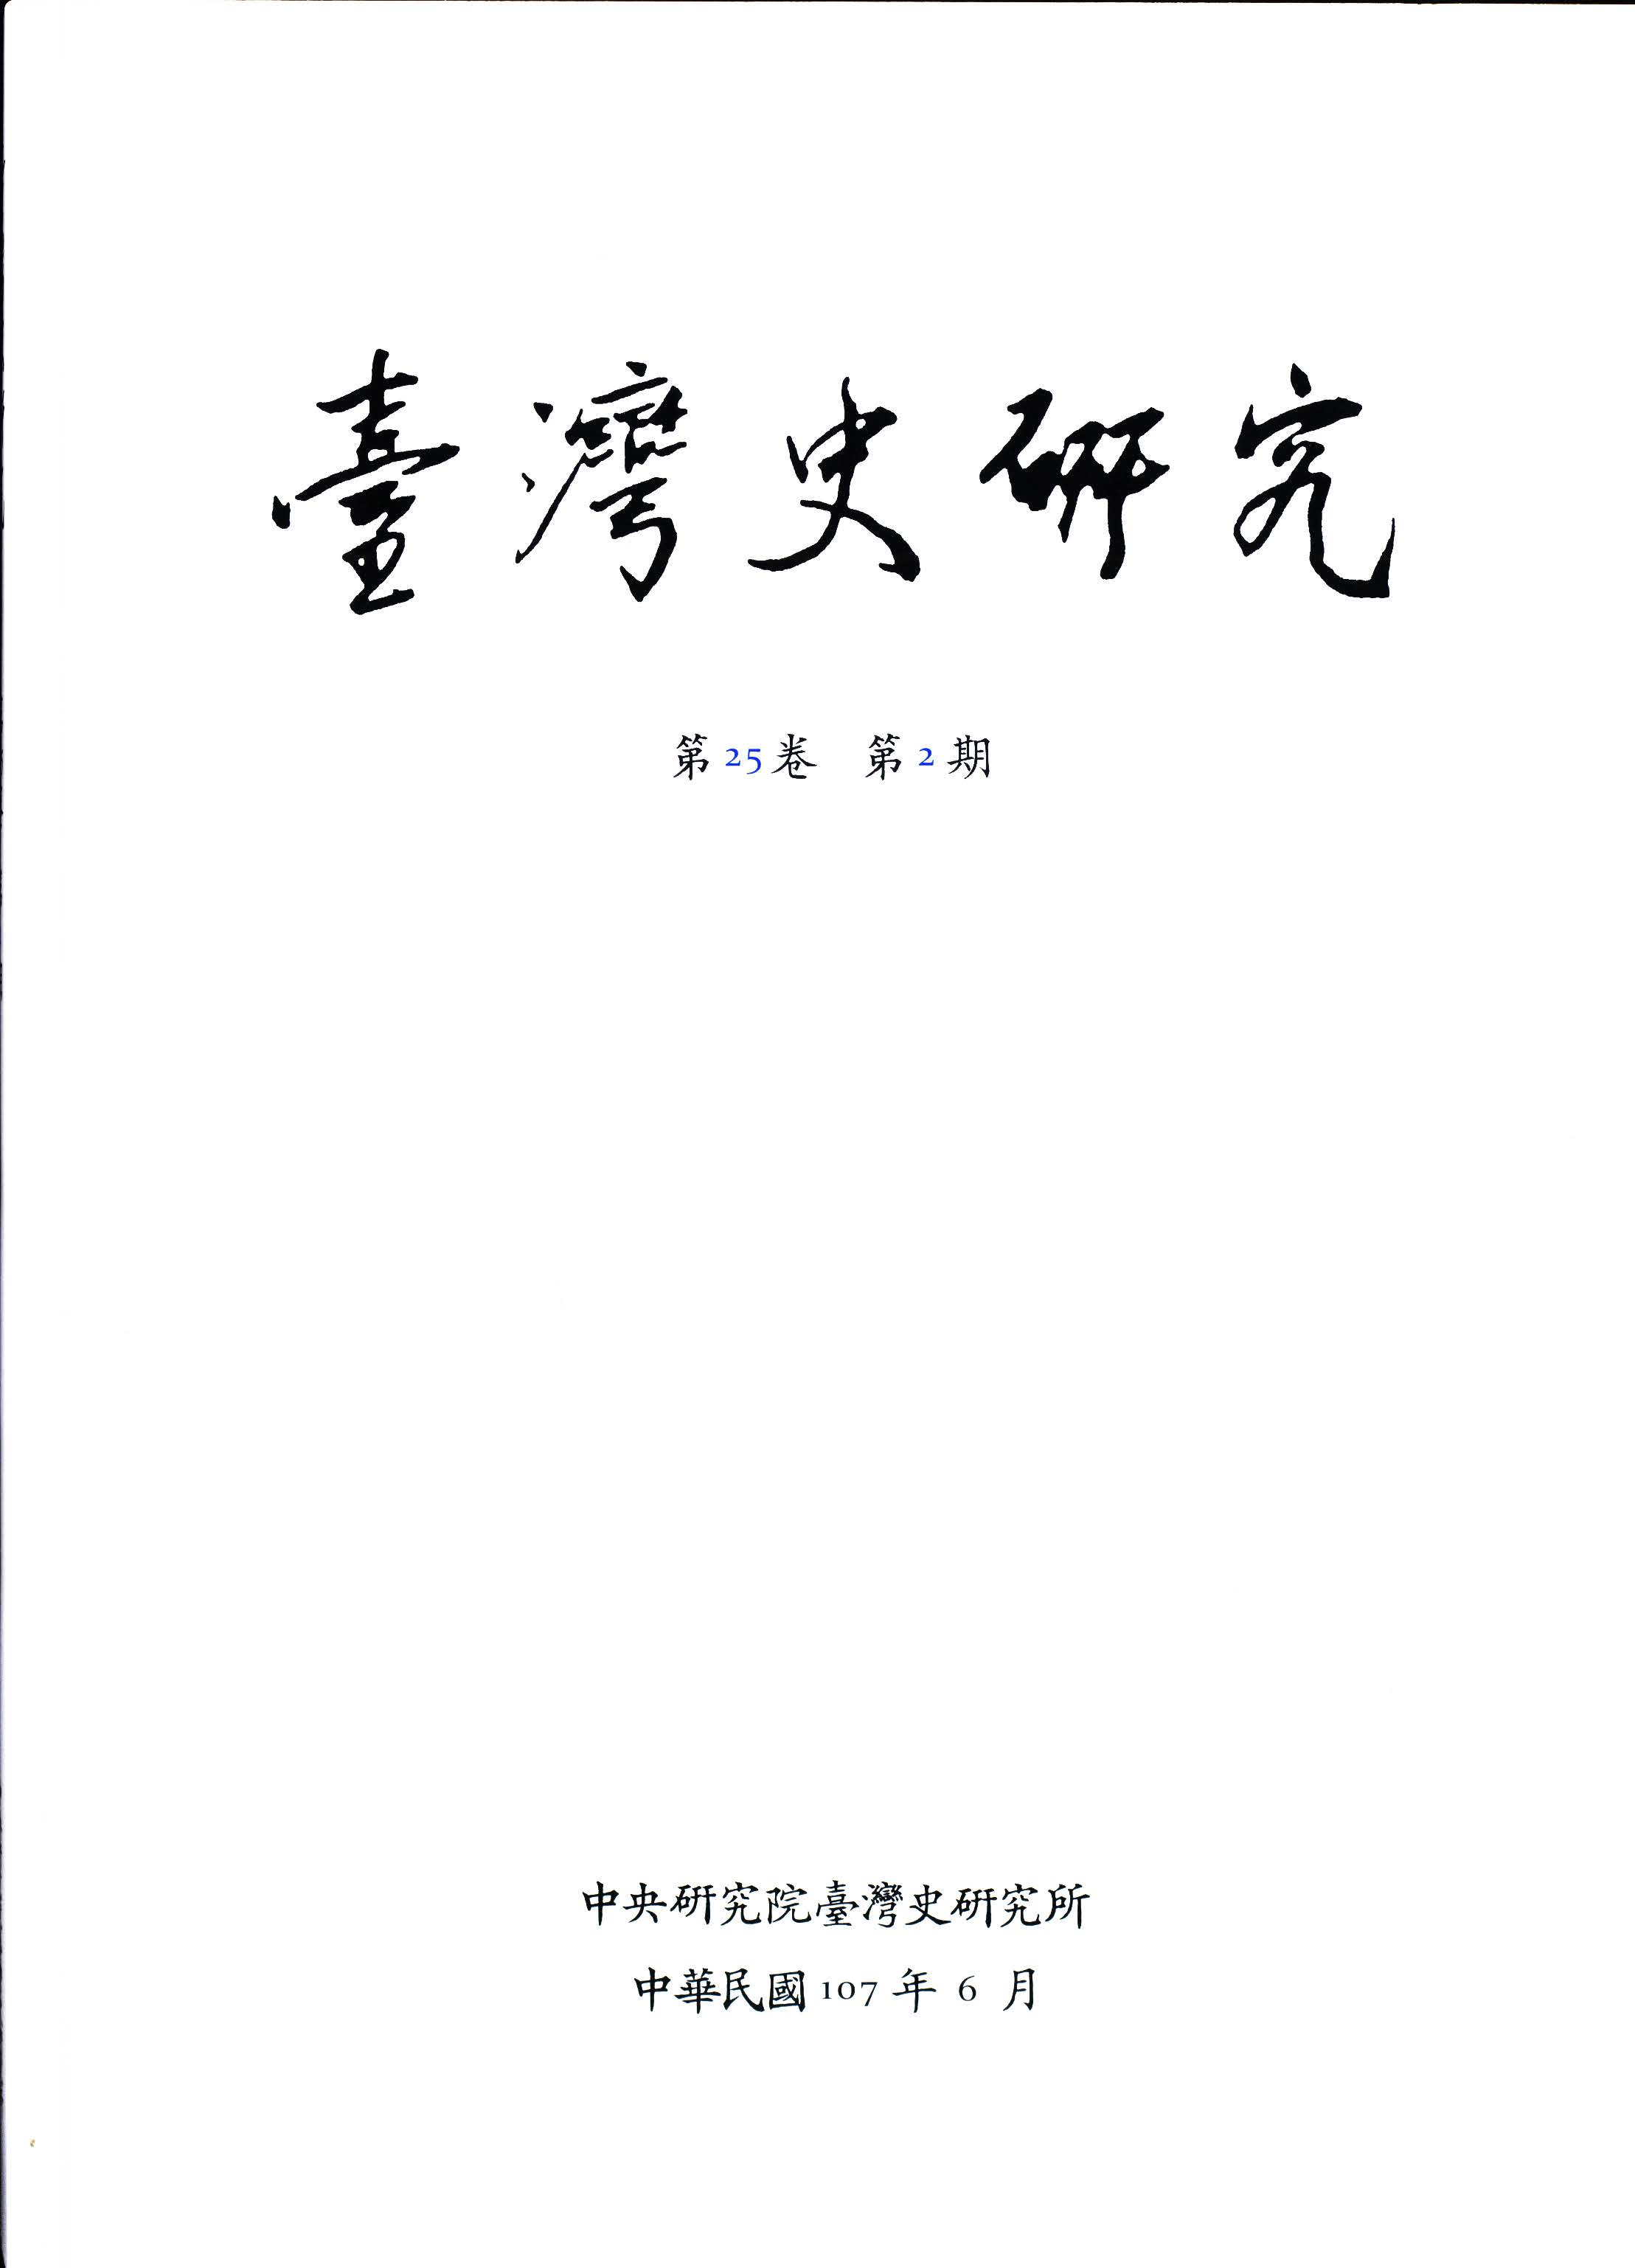 《臺灣史研究》季刊第25卷第2期出版